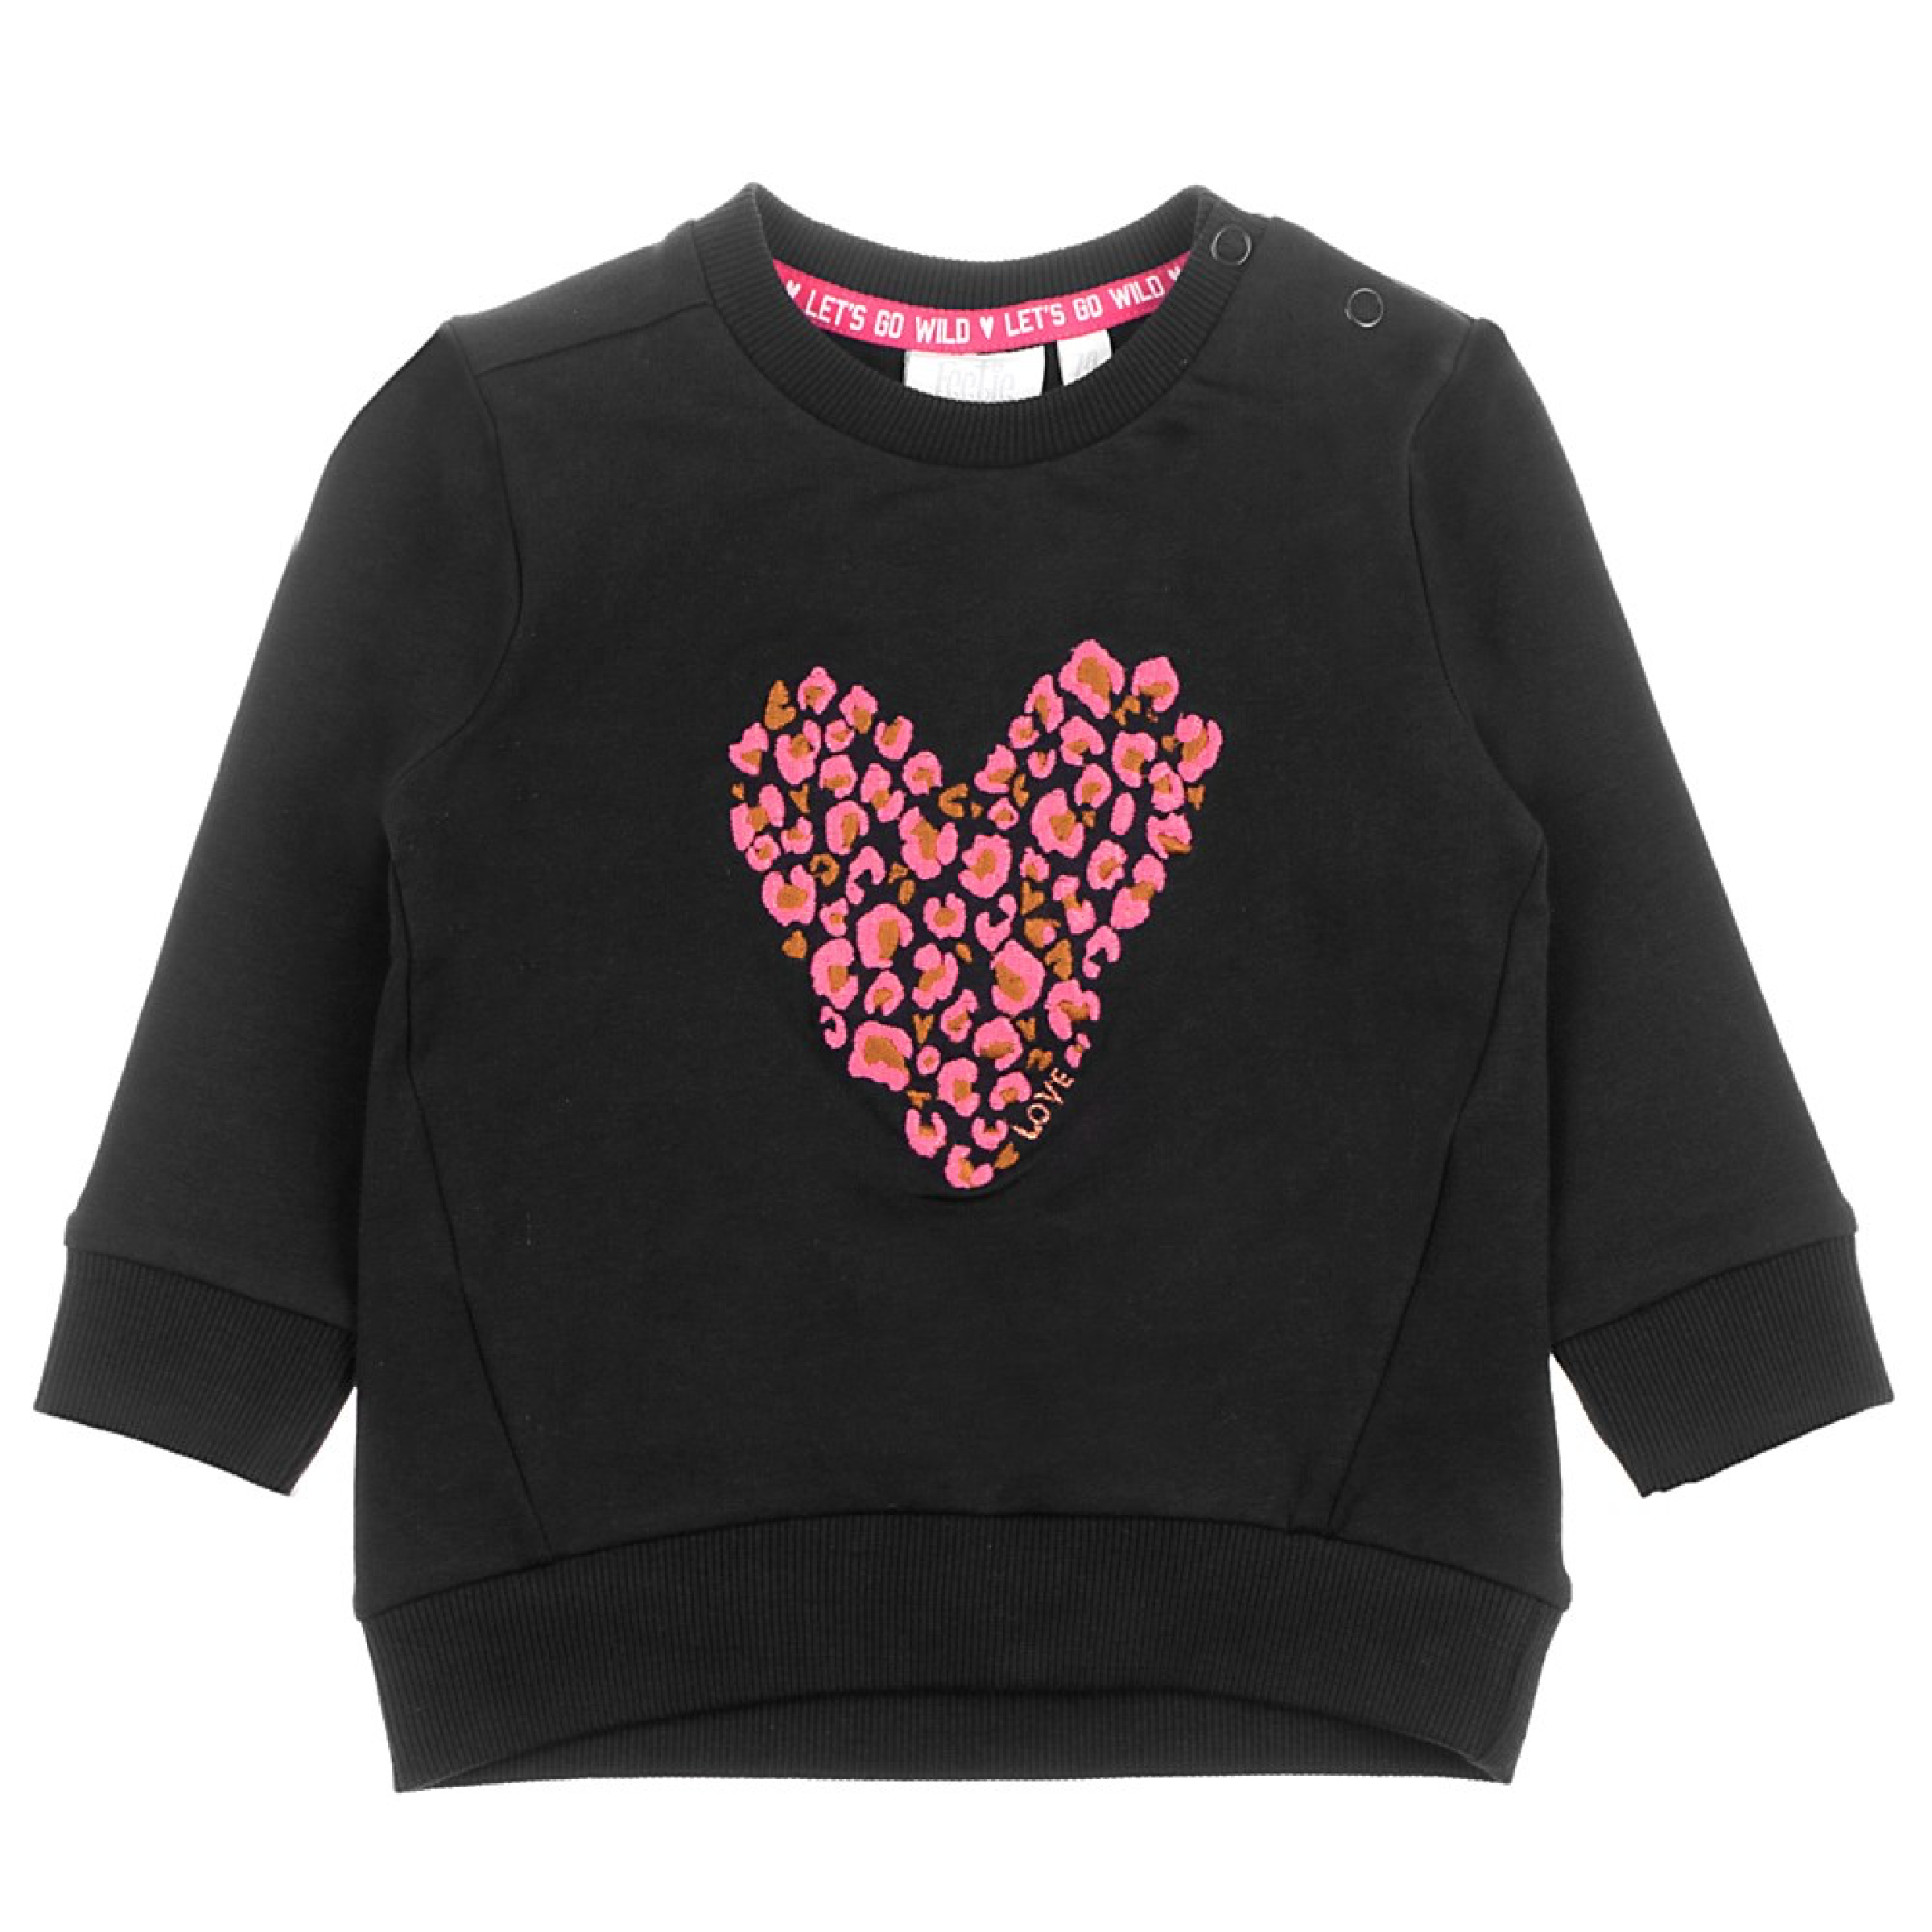 Meisjes Sweater - Animal Attitude van Feetje in de kleur Zwart in maat 86.